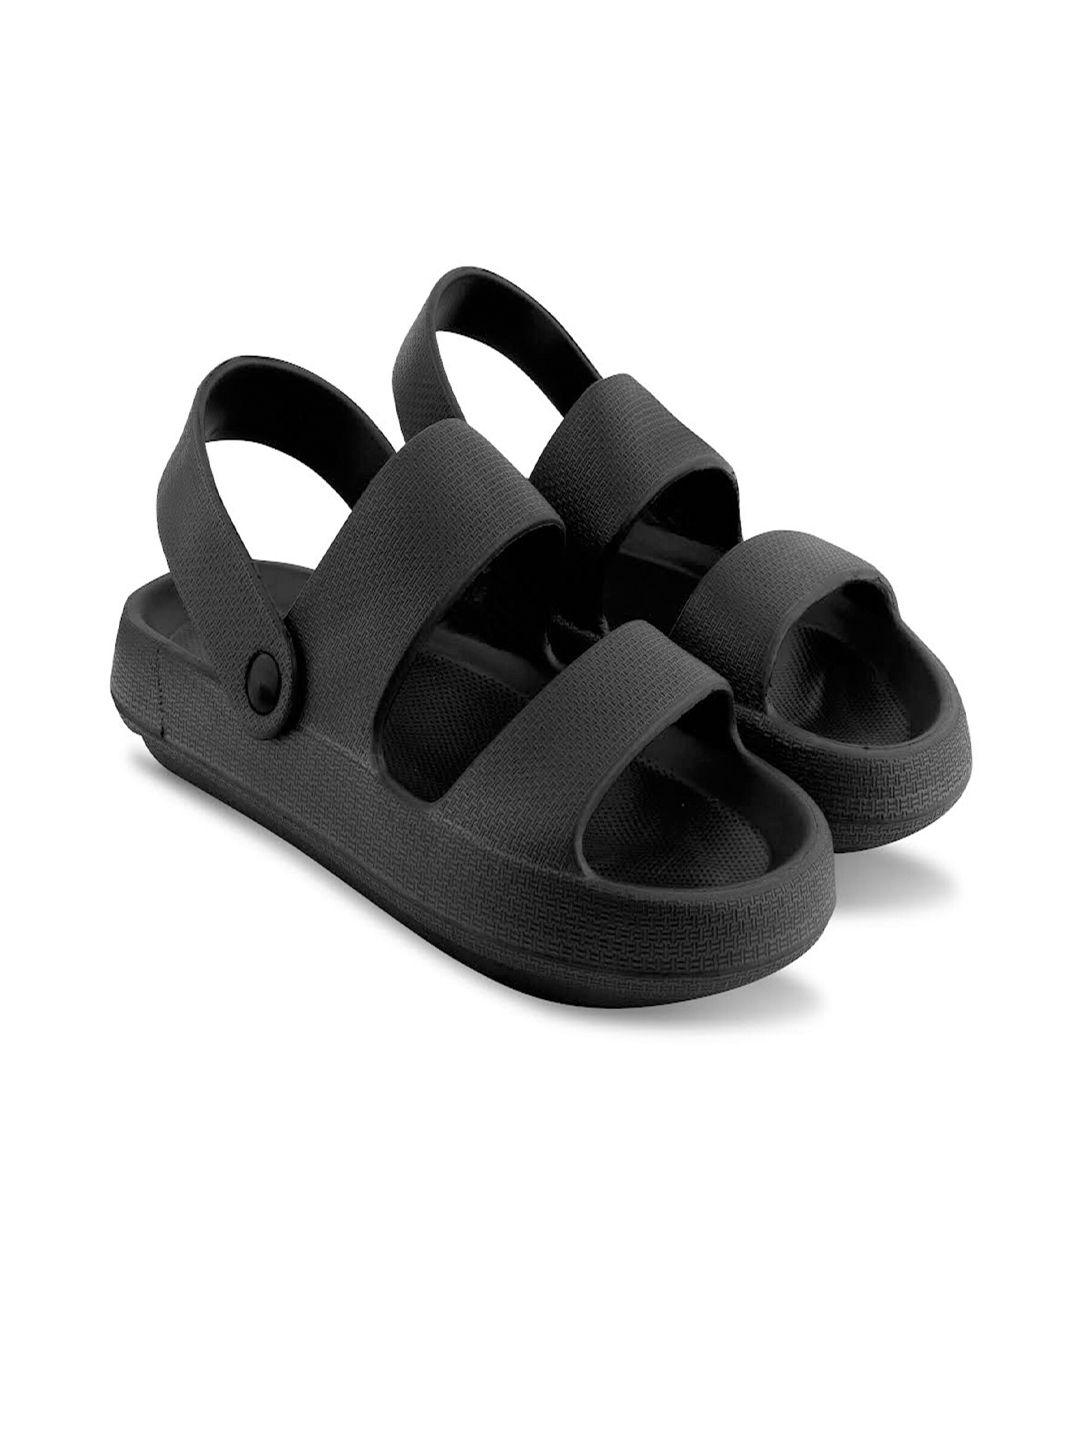 beonza men synthetic comfort sandals